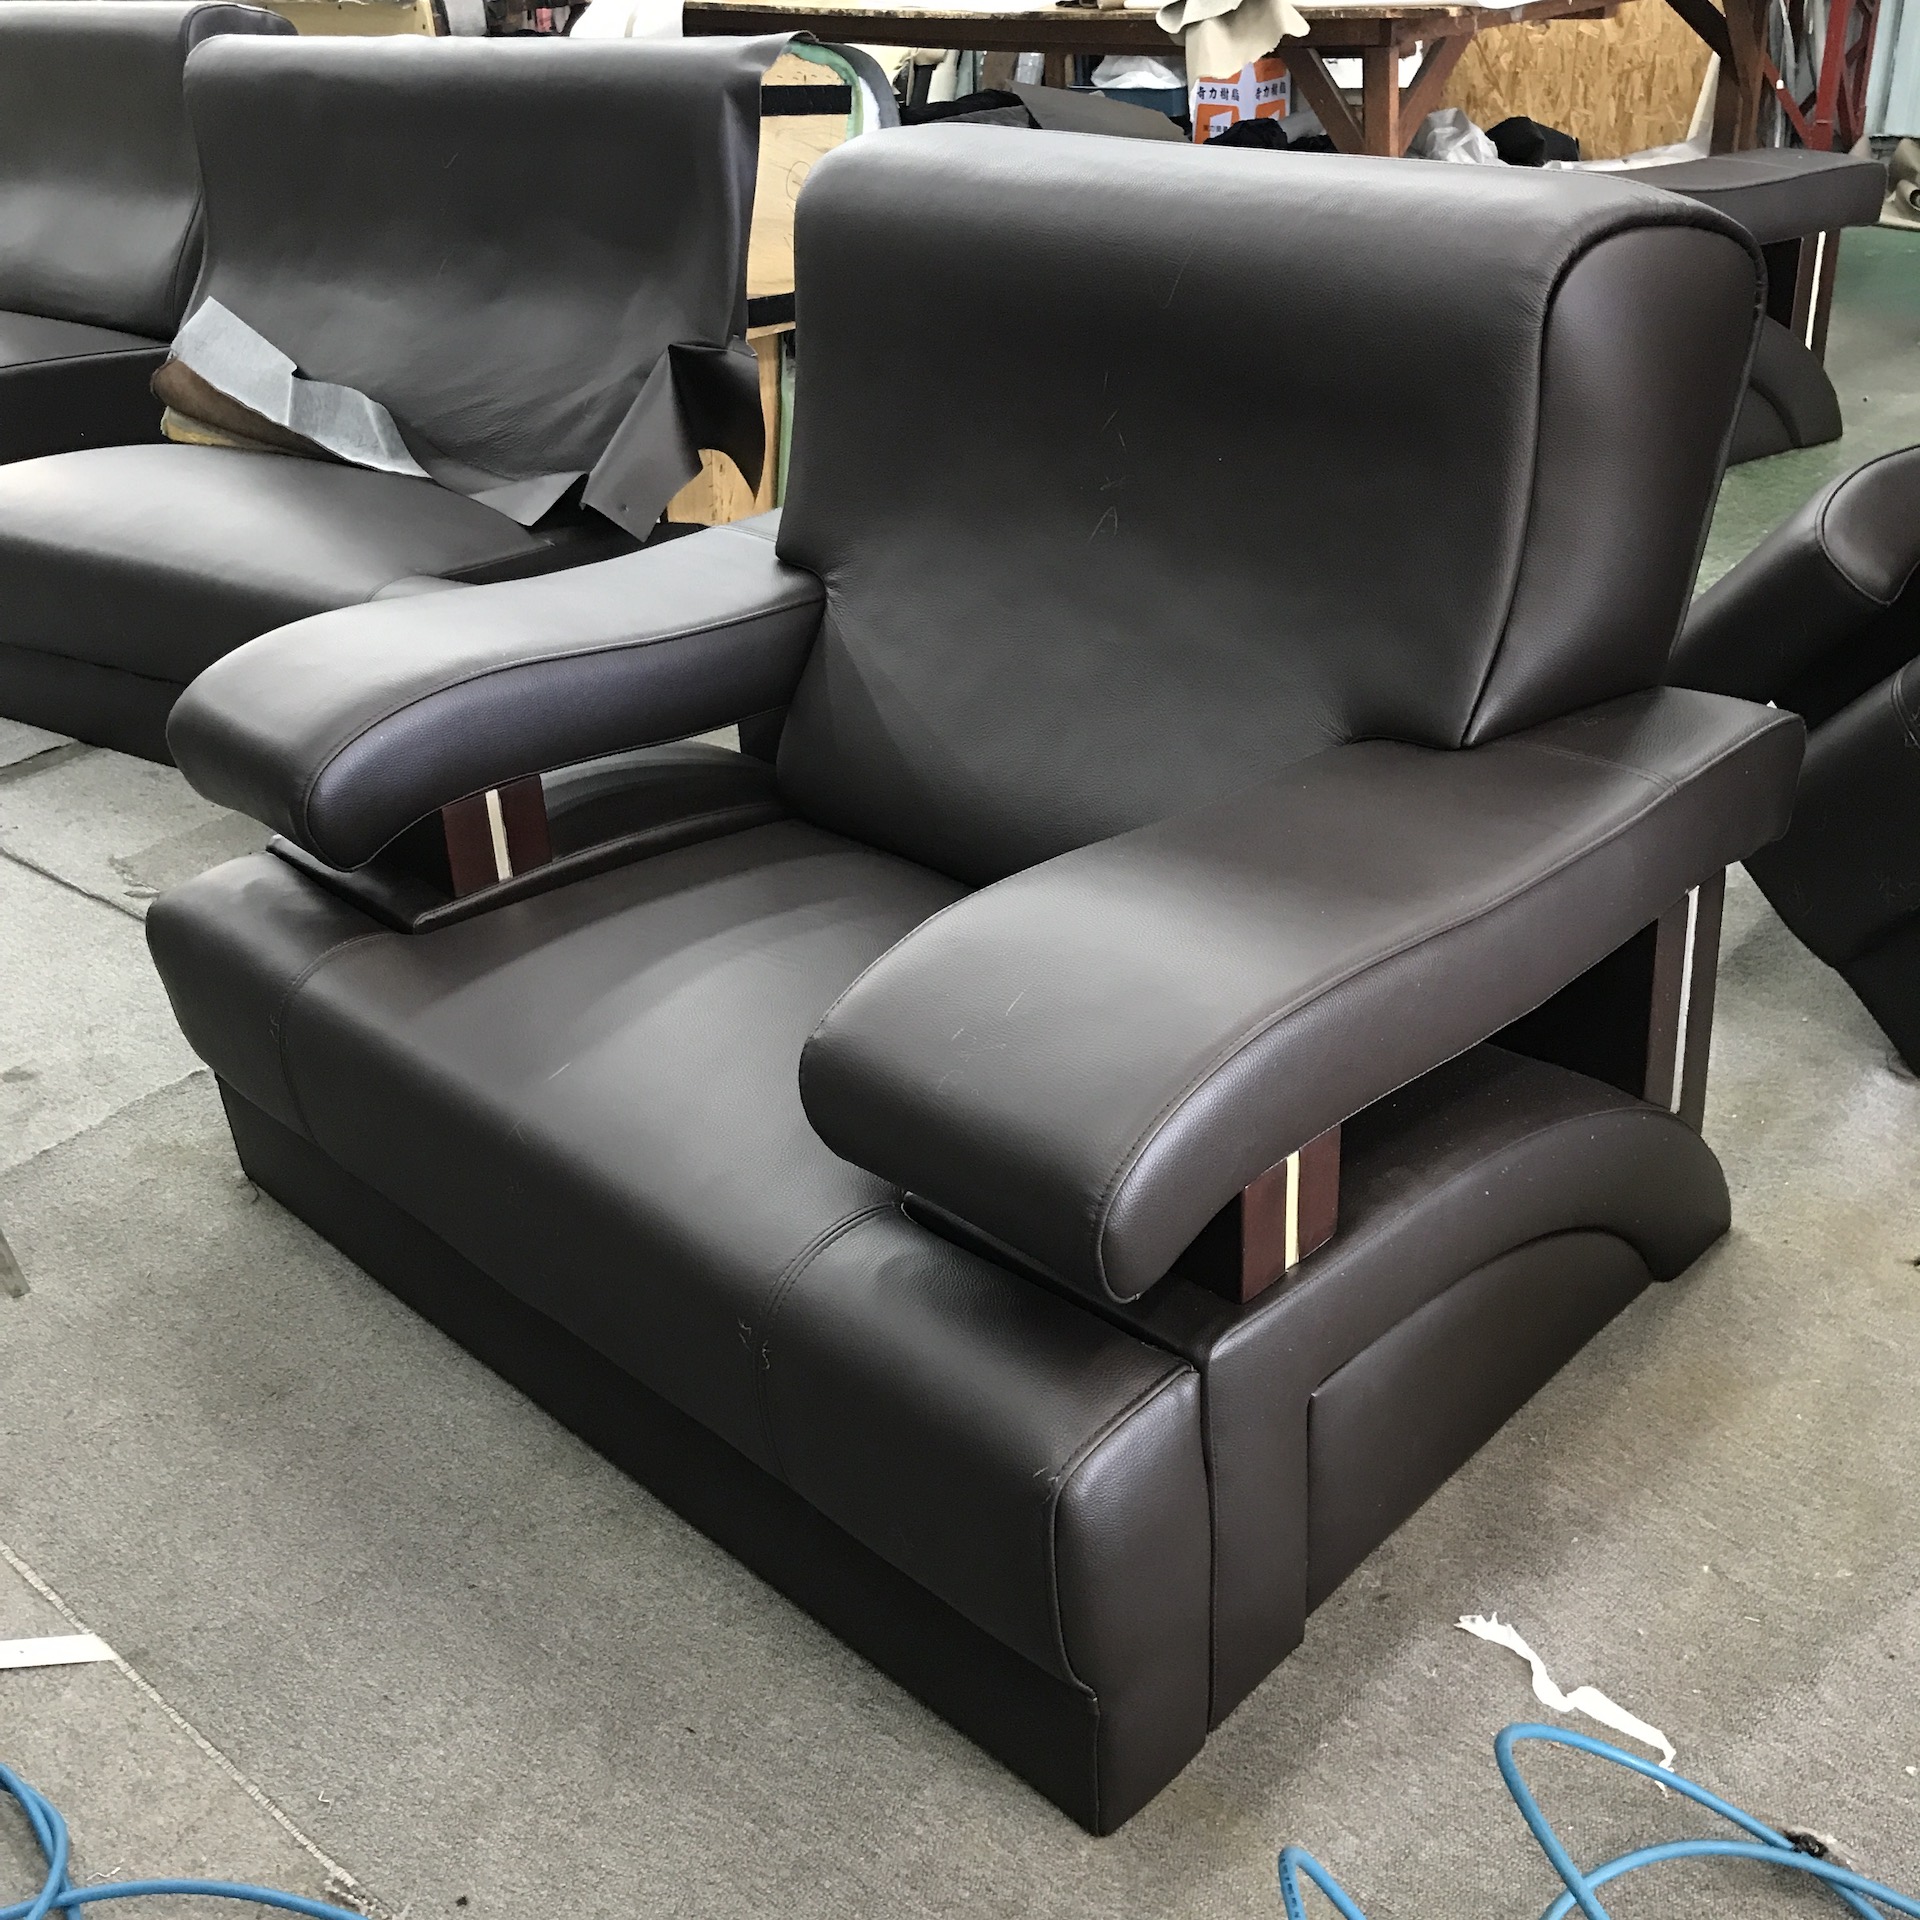 【客戶案例分享】太平 1+1+4人座沙發整座翻修更換半牛皮